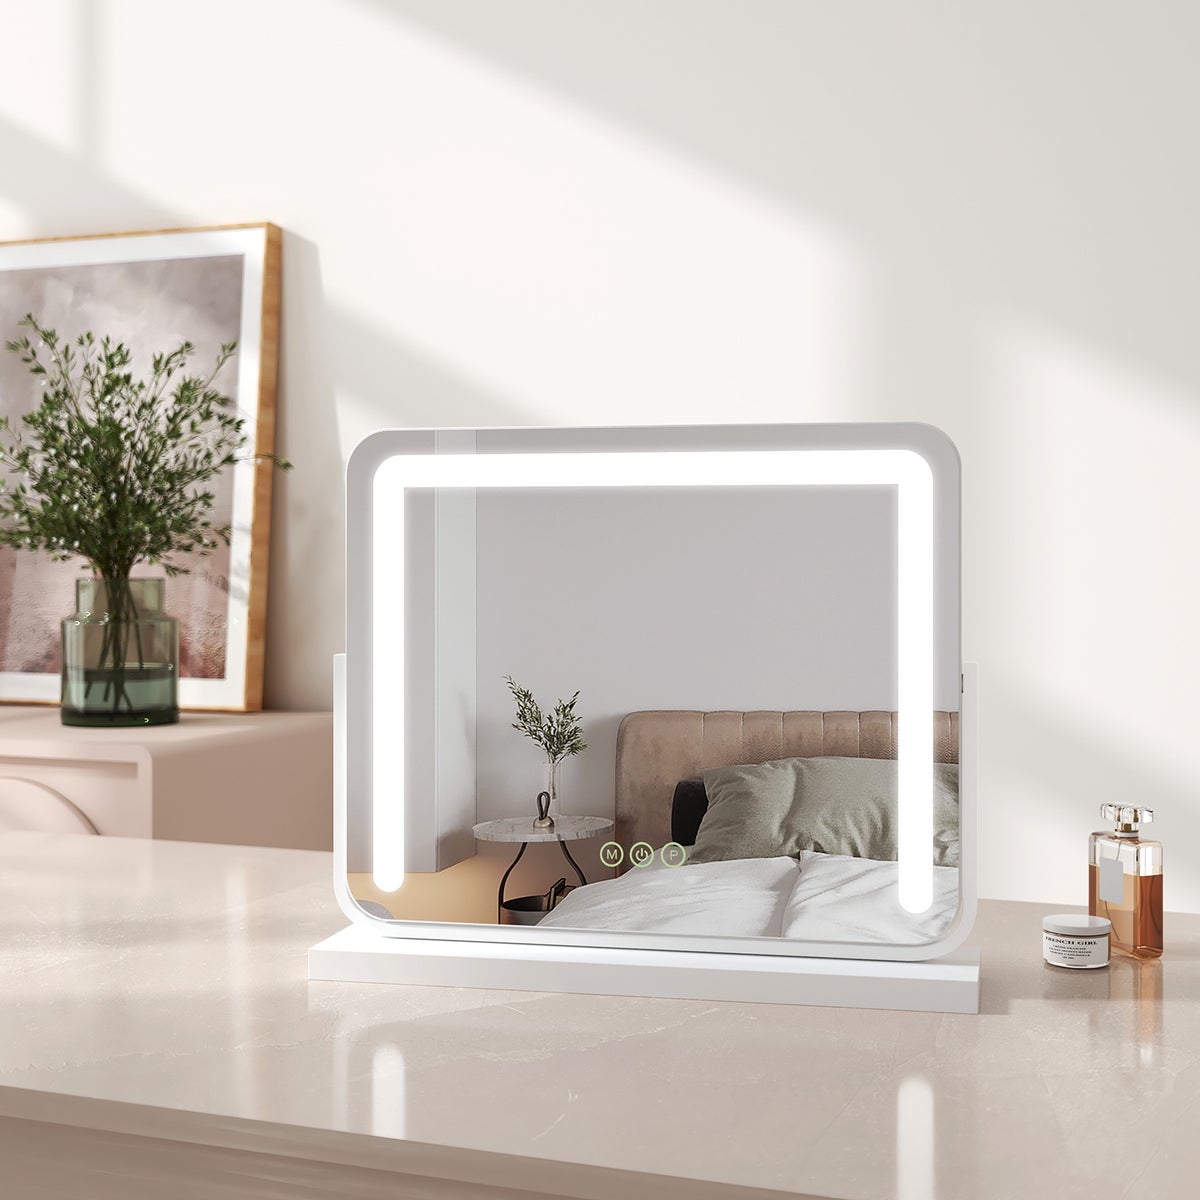 EMKE Schminkspiegel mit Beleuchtung LED Kosmetikspiegel Drehbar Make Up Spiegel mit Touchschalter, 3 Lichtfarben Dimmbar und Memory-Funktion, Weiß, 50x41,6cm